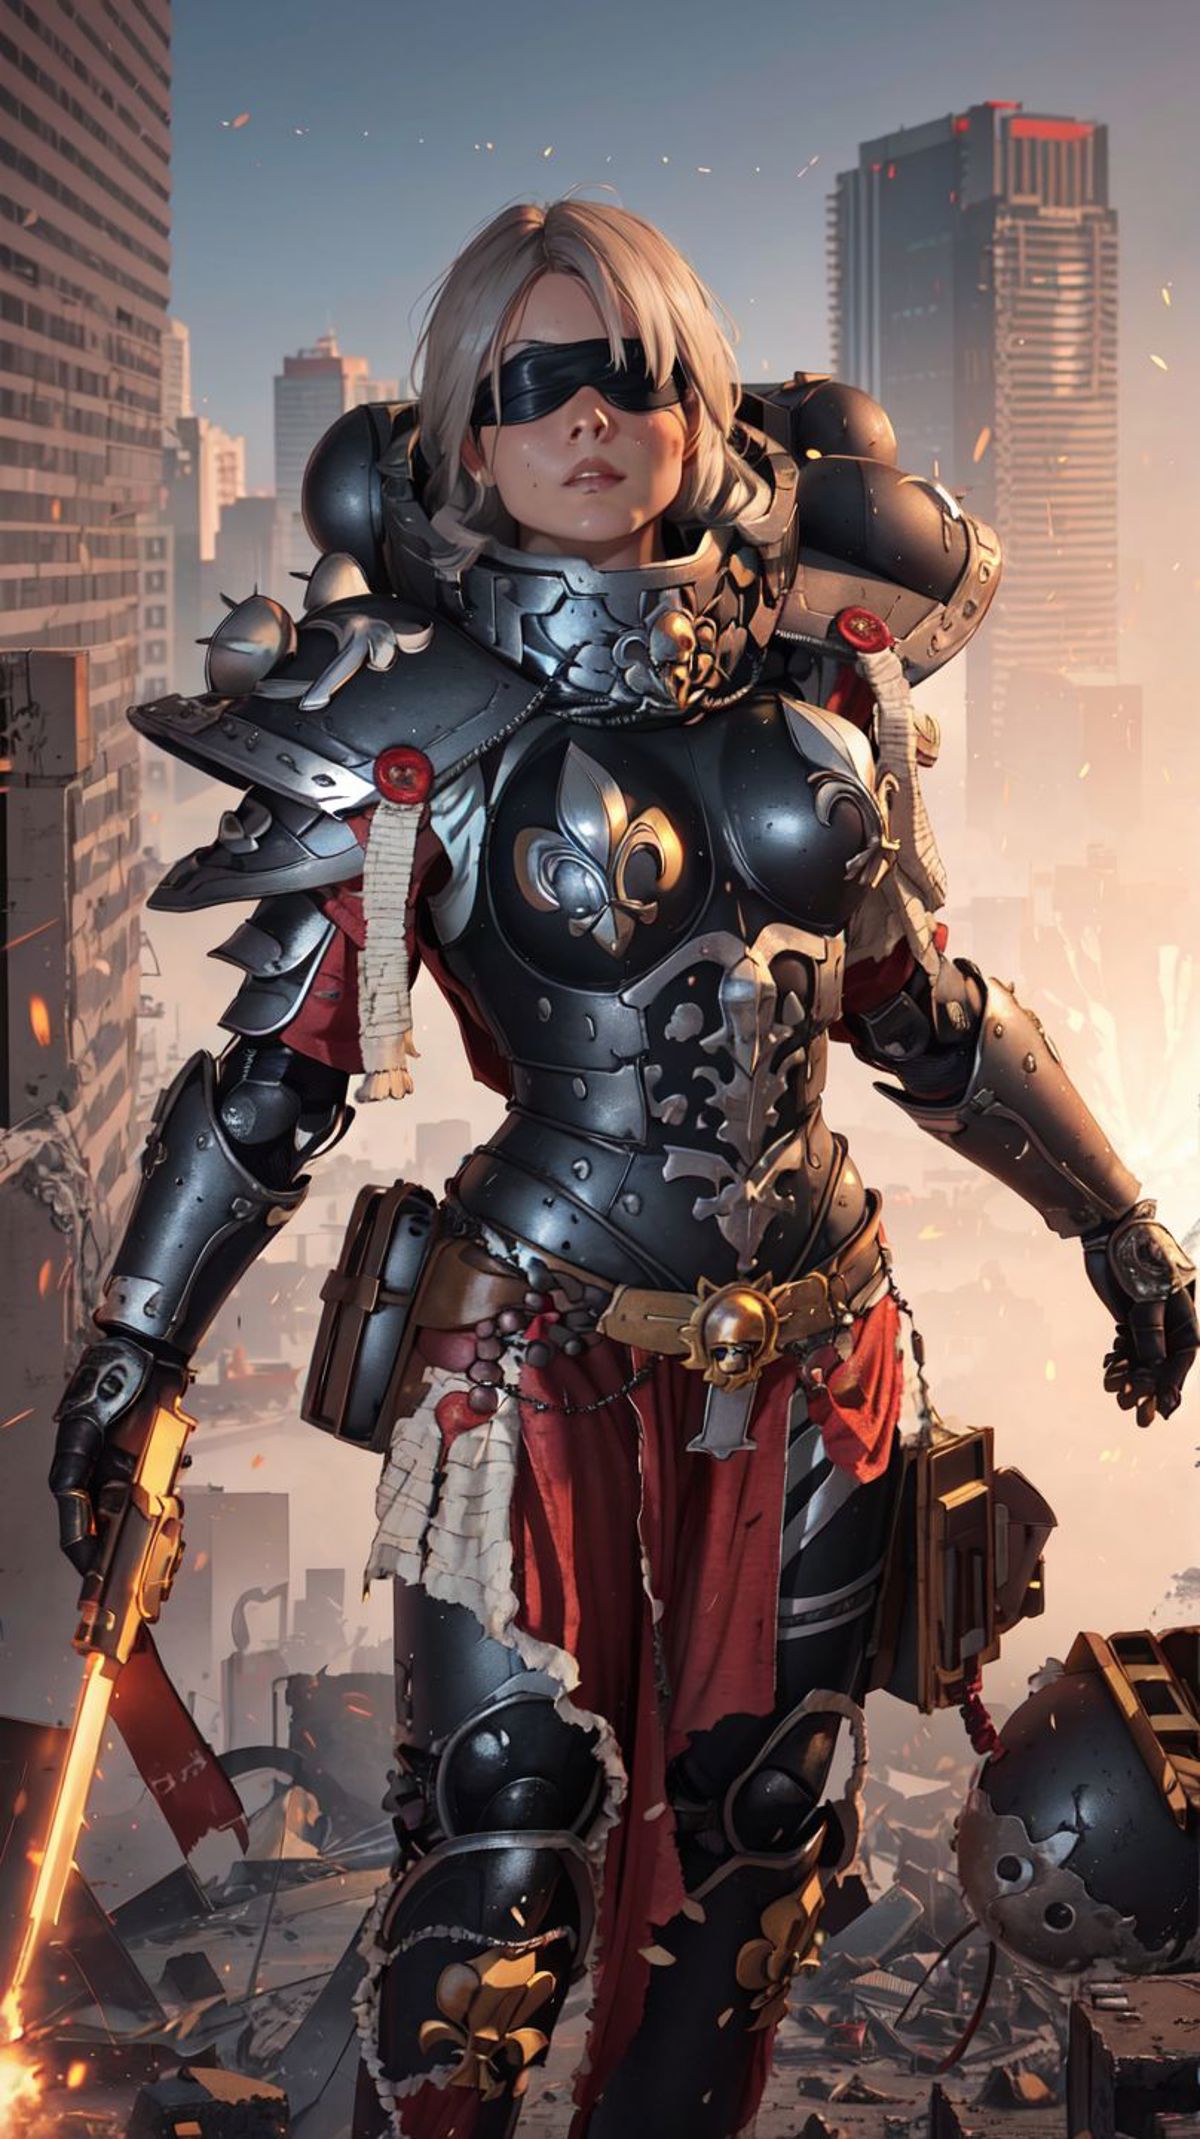 Warhammer 40K Adepta Sororitas Sister of Battle armor - by EDG image by marusame